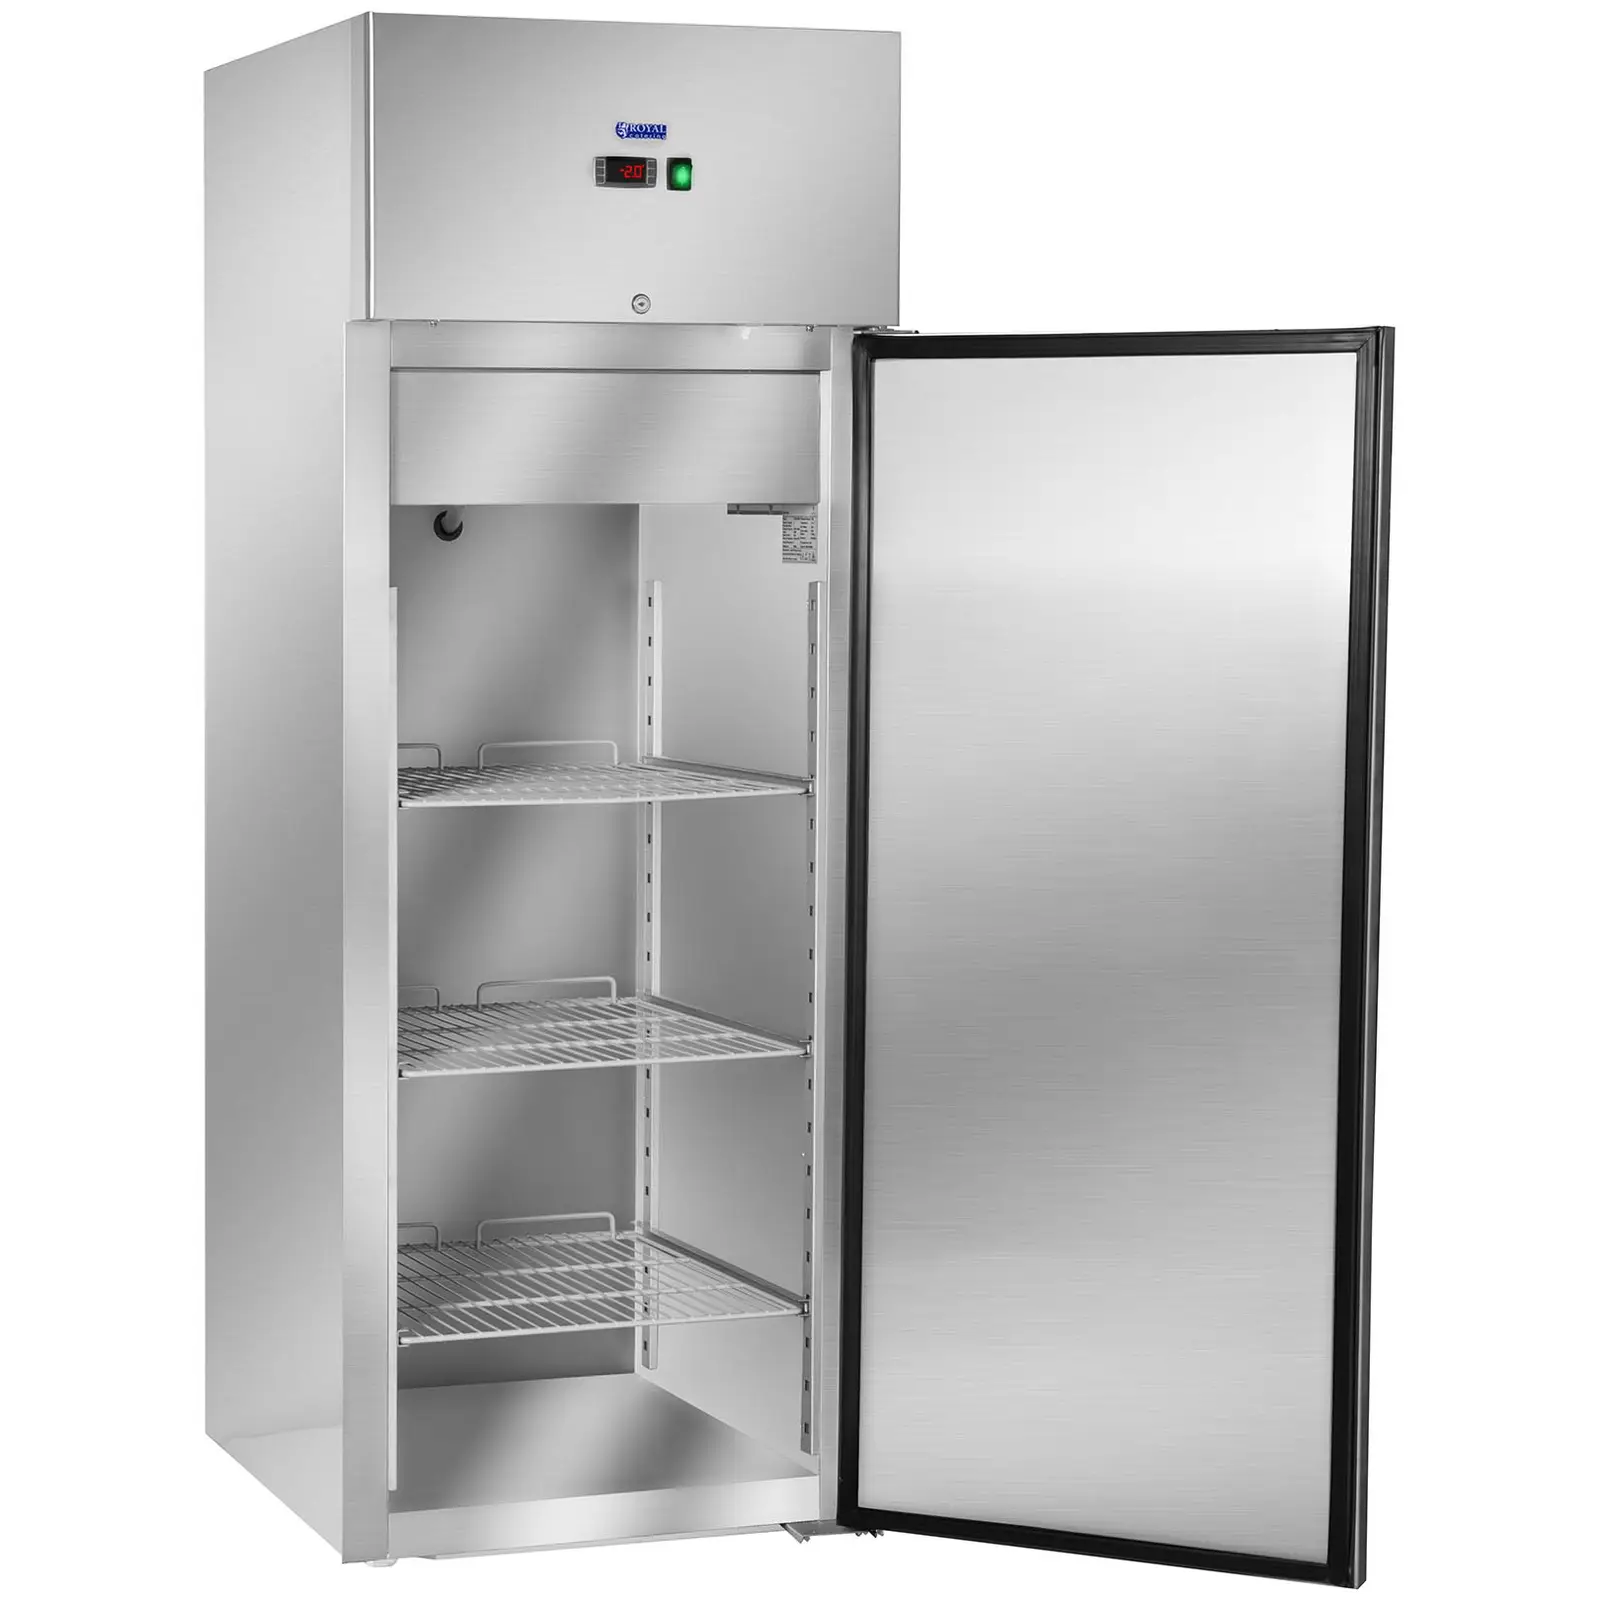 Refrigerador para gastronomía - 540 L - acero inoxidable